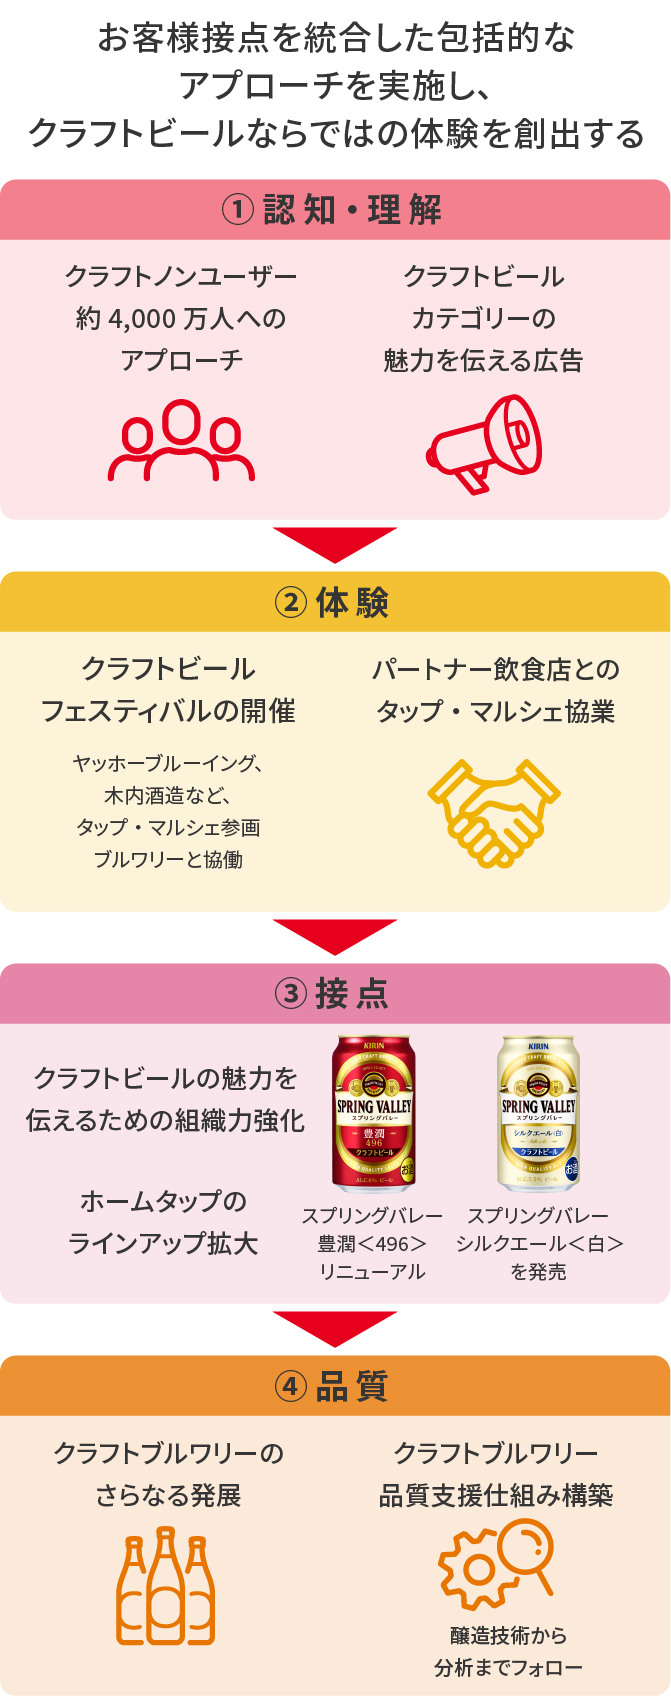 図：お客様接点を統合した包括的なアプローチを実施し、クラフトビールならではの体験を創出する